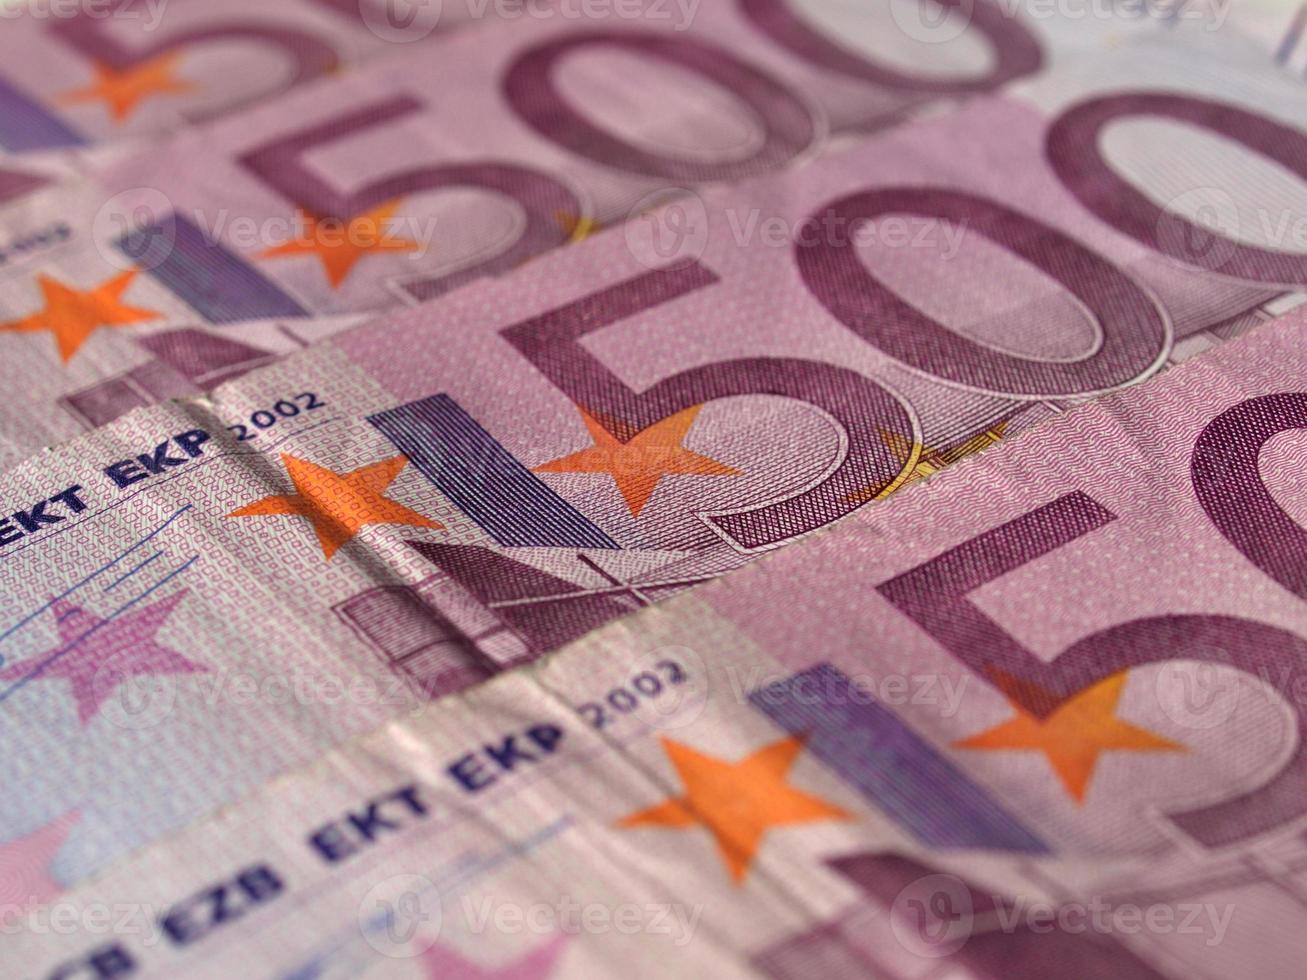 Banconota da 500 euro, unione europea foto